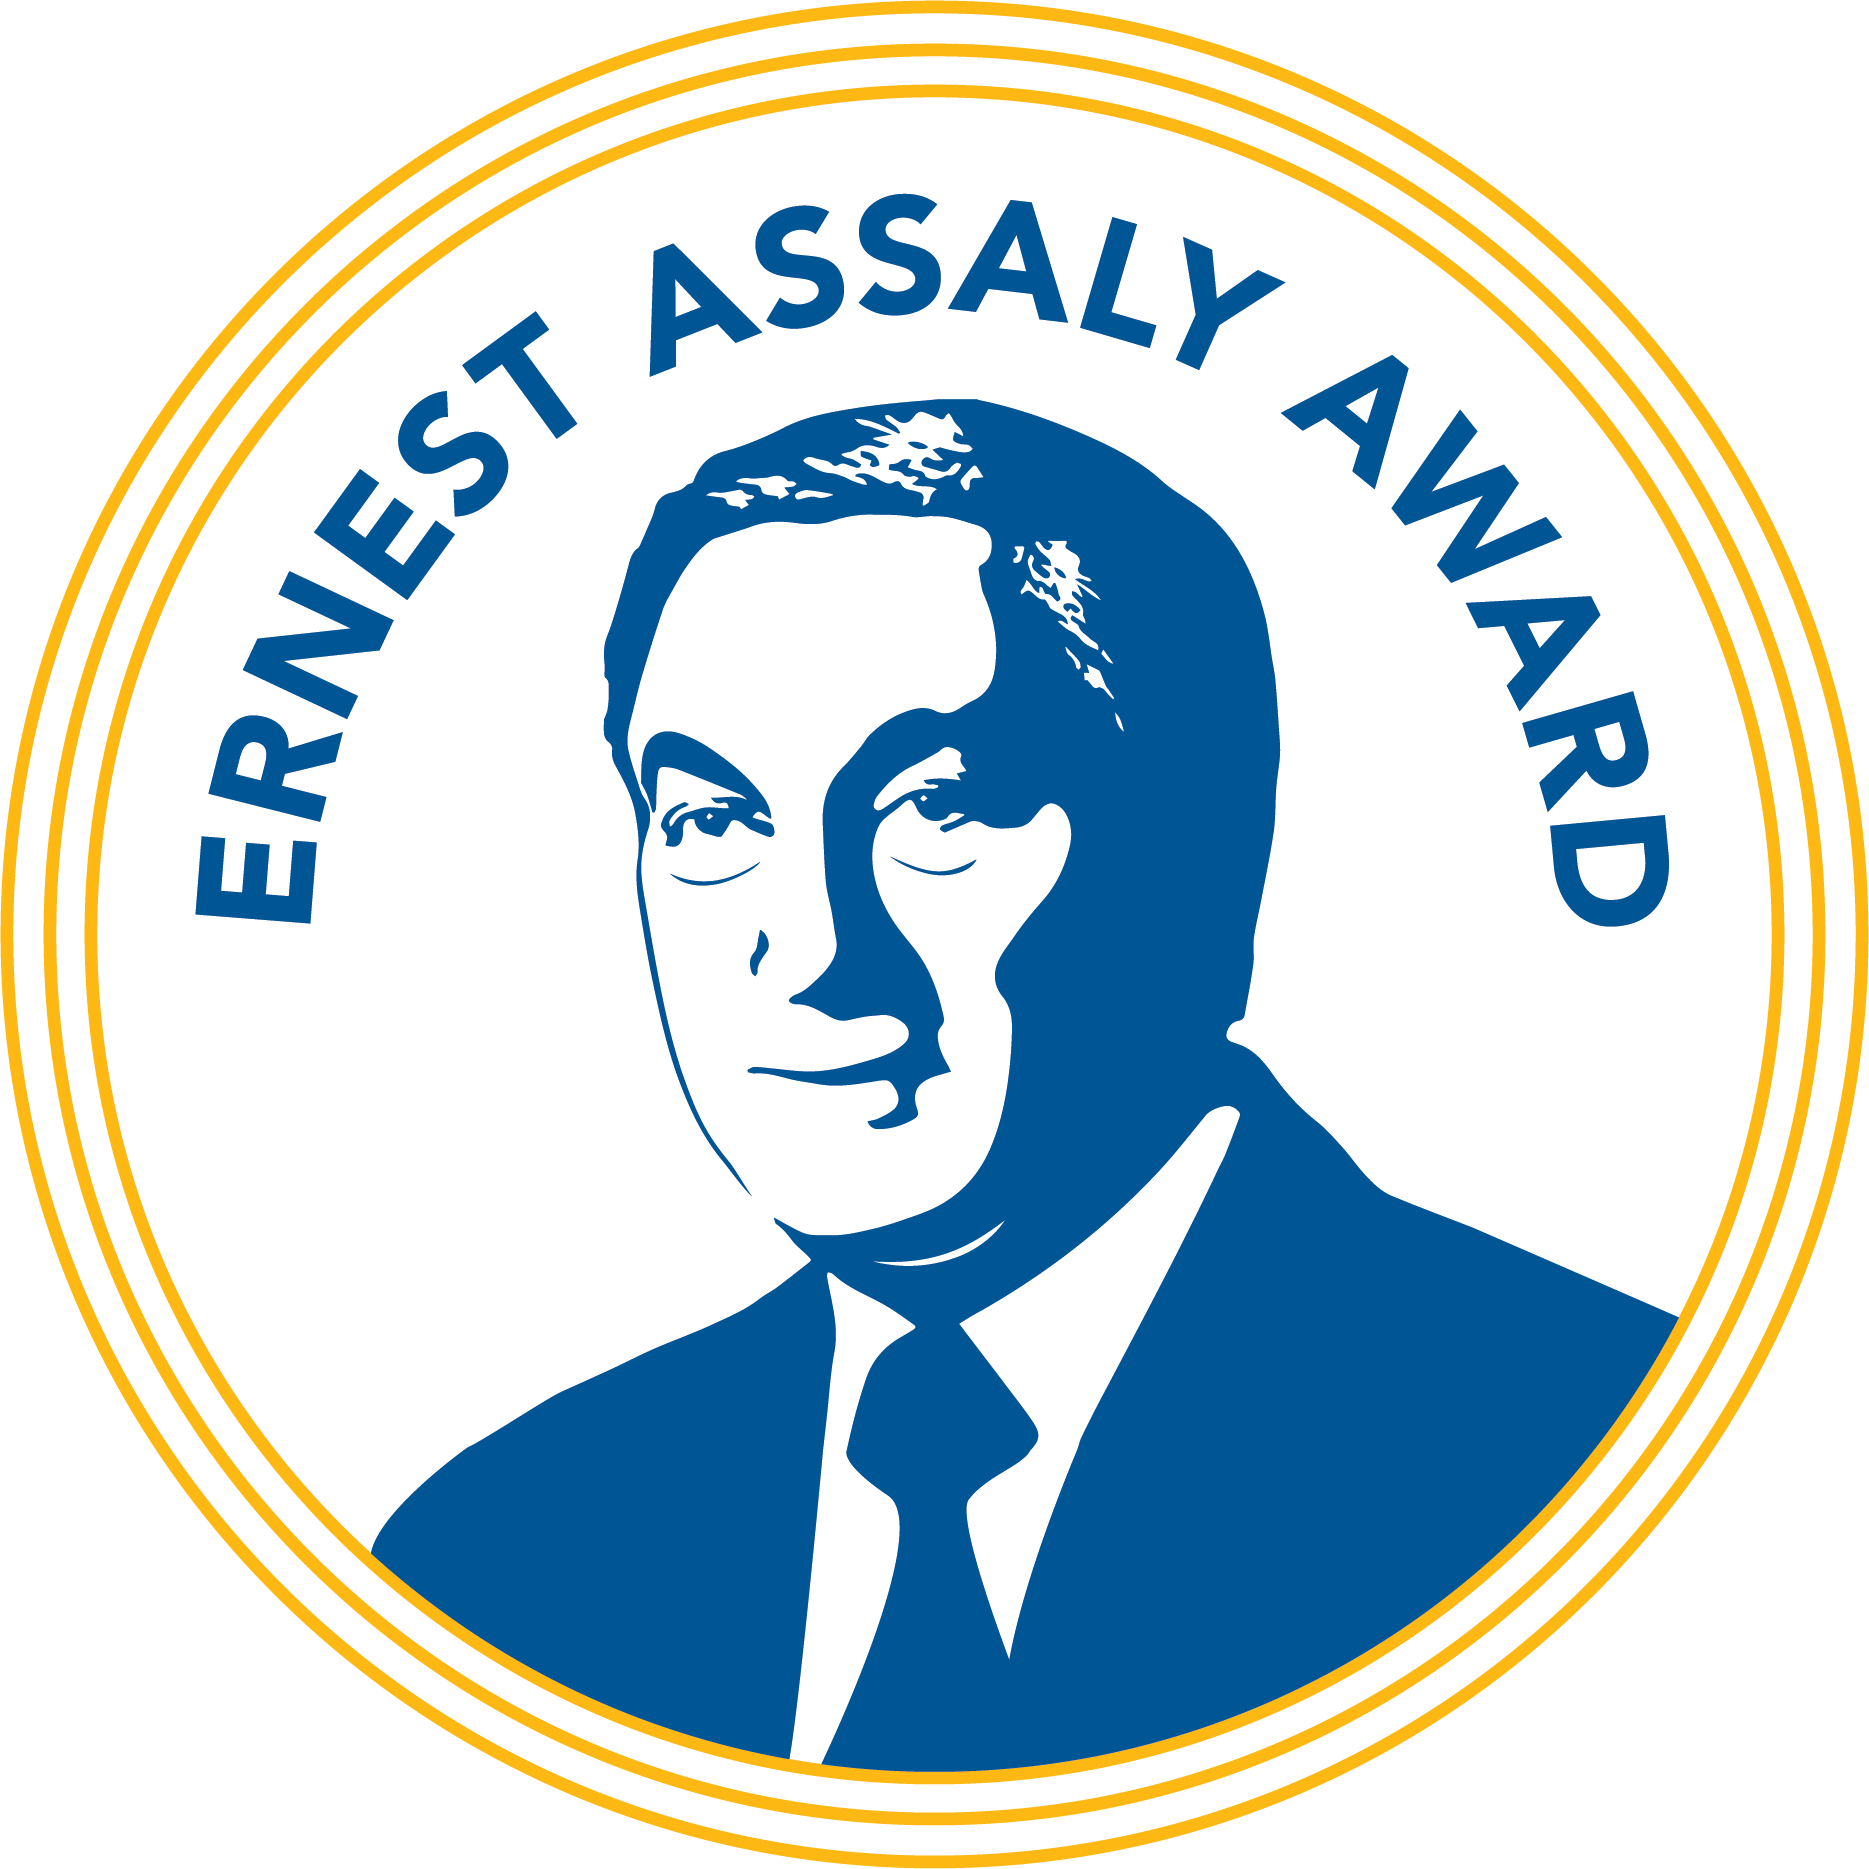 Ernest Assaly